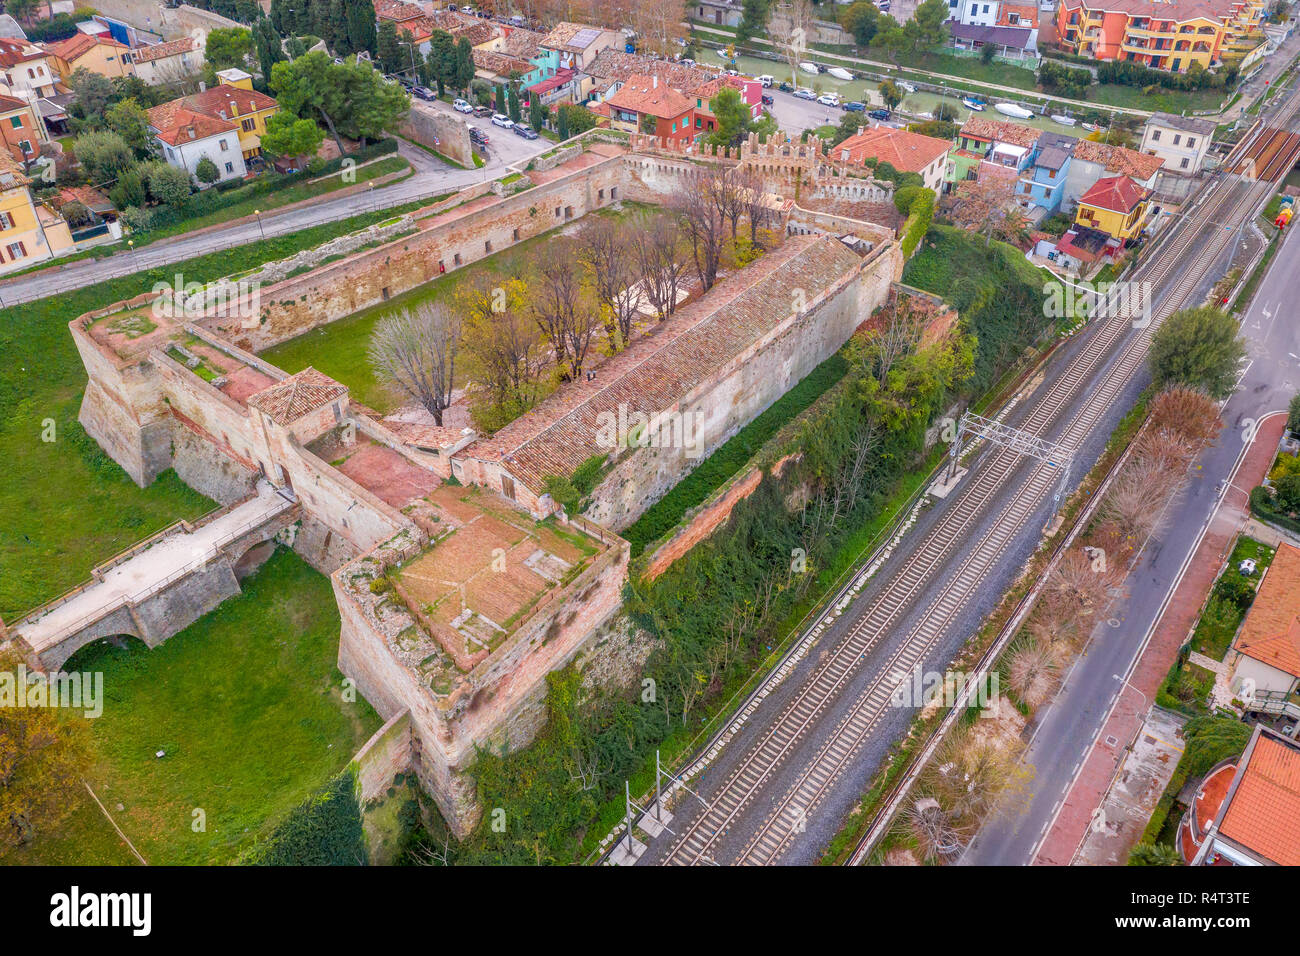 Luftbild der mittelalterlichen Stadtbefestigung von beliebten Reiseziel Stadt am Strand Fano in Italien in der Nähe von Rimini, in der Region Marche. Stockfoto